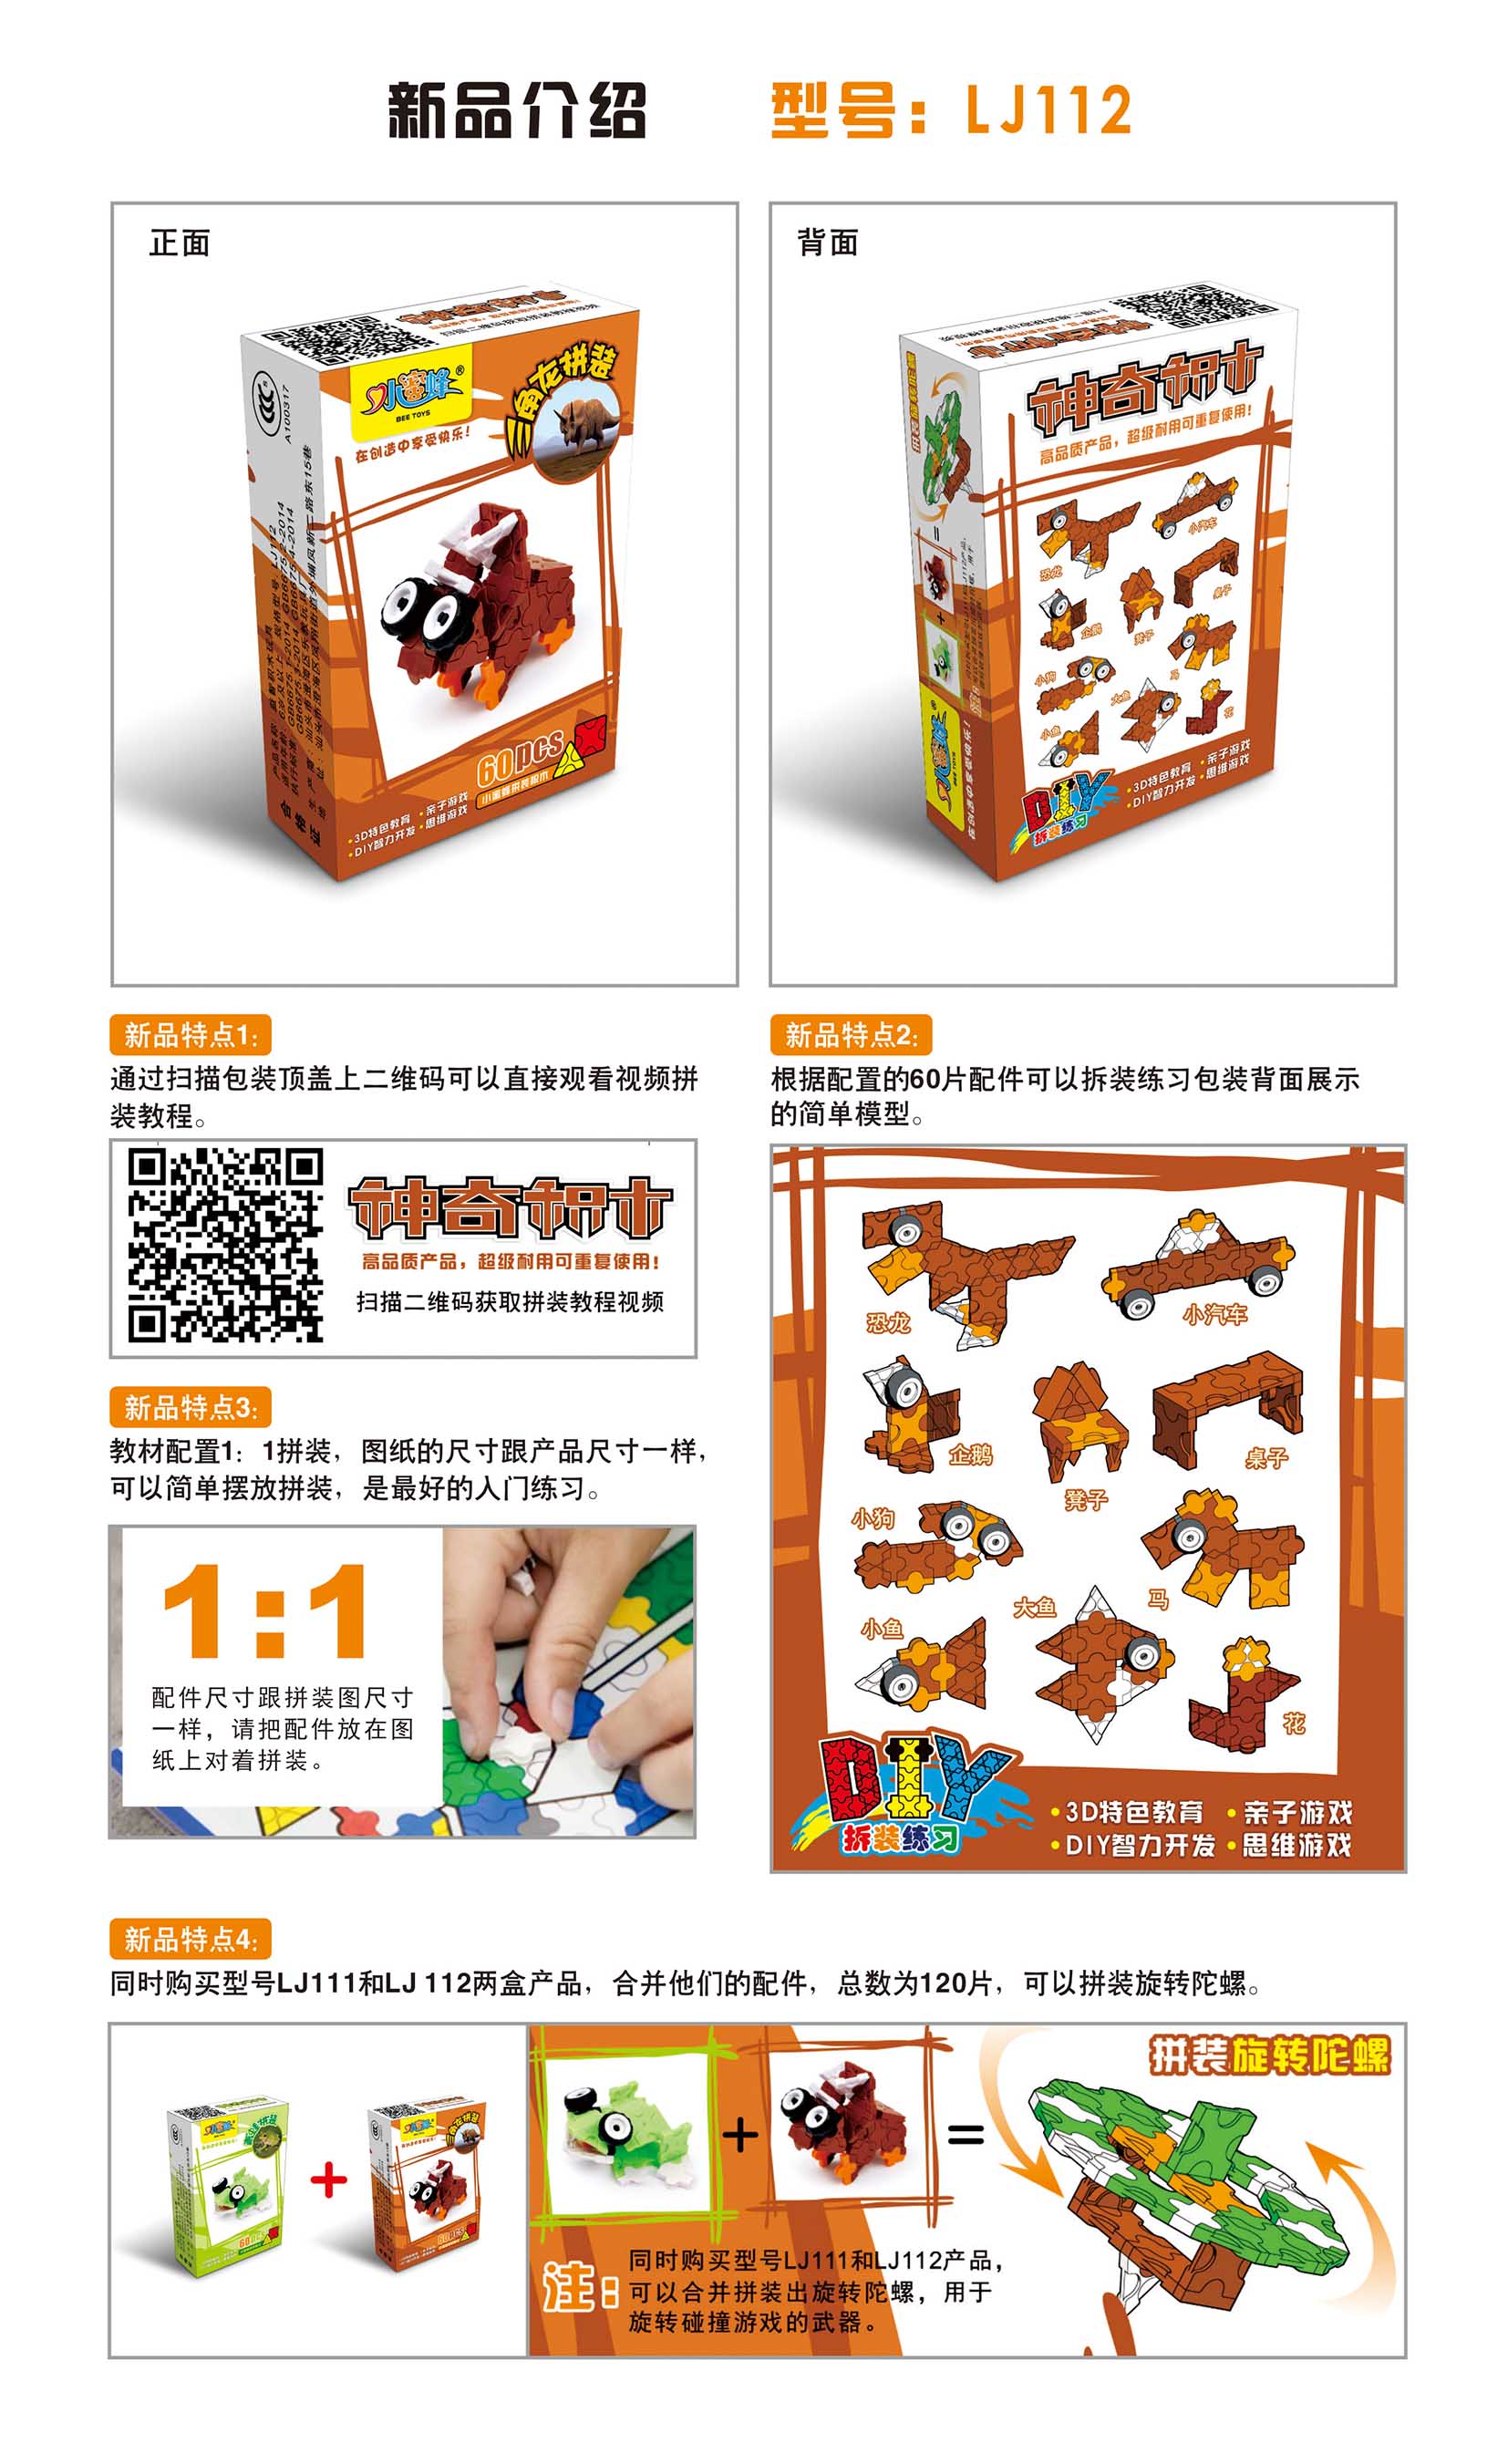 Children's magic magic 3D plastic assembling toy delta dragon assembled color box3